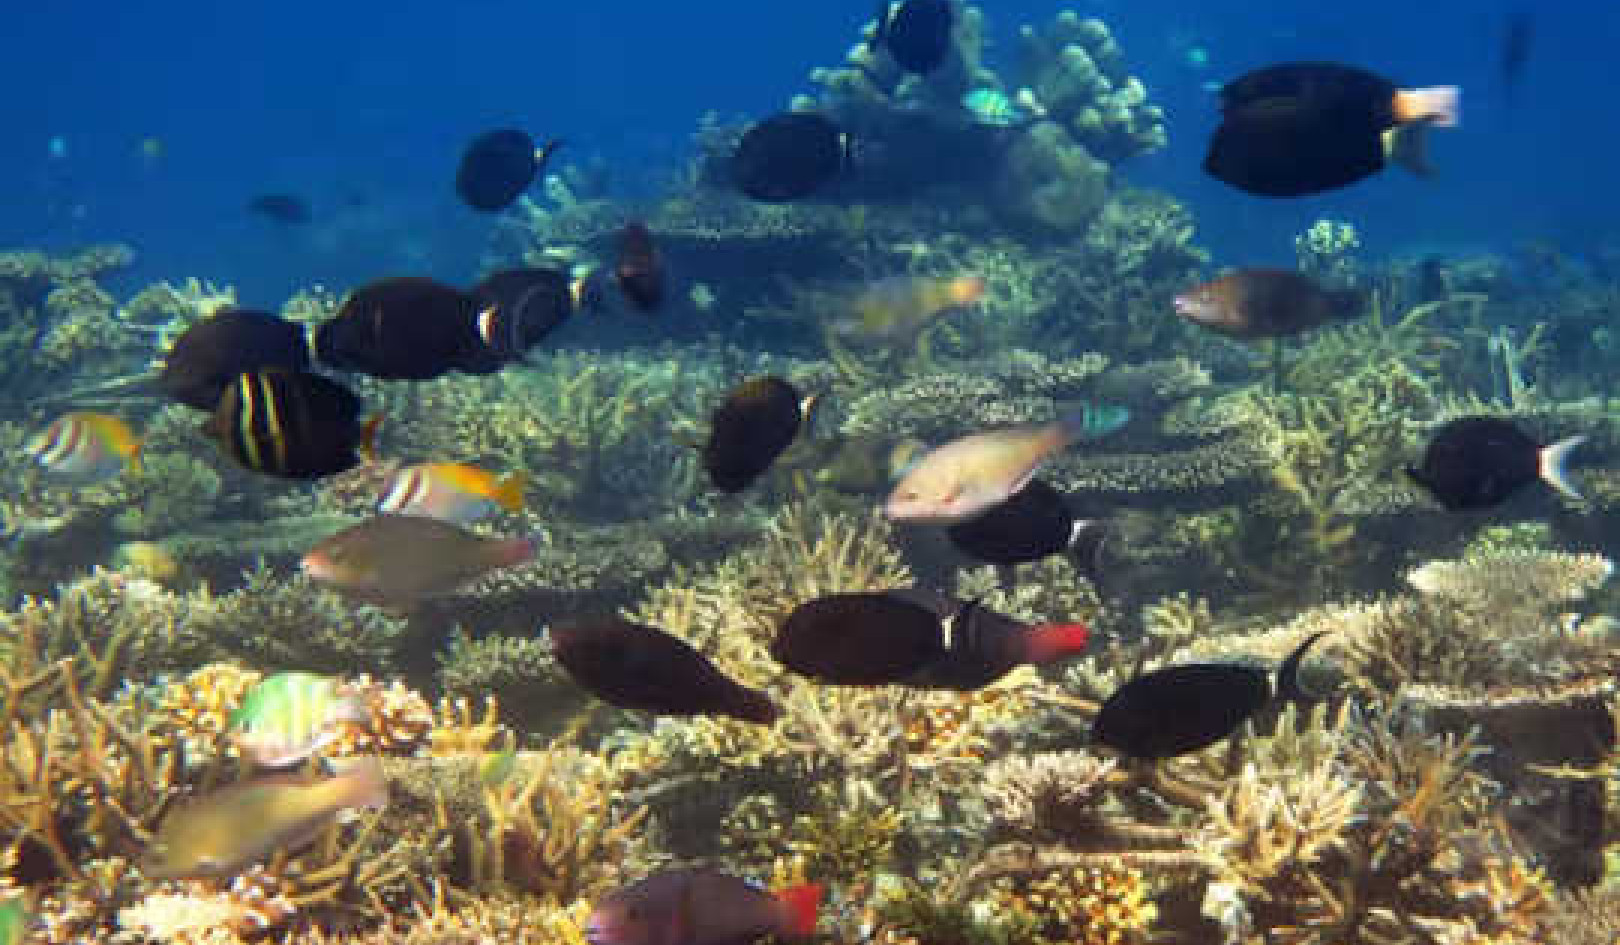 ทำไมแนวปะการังอาจหายไปที่อุณหภูมิโลกร้อน 1.5 องศาเซลเซียส